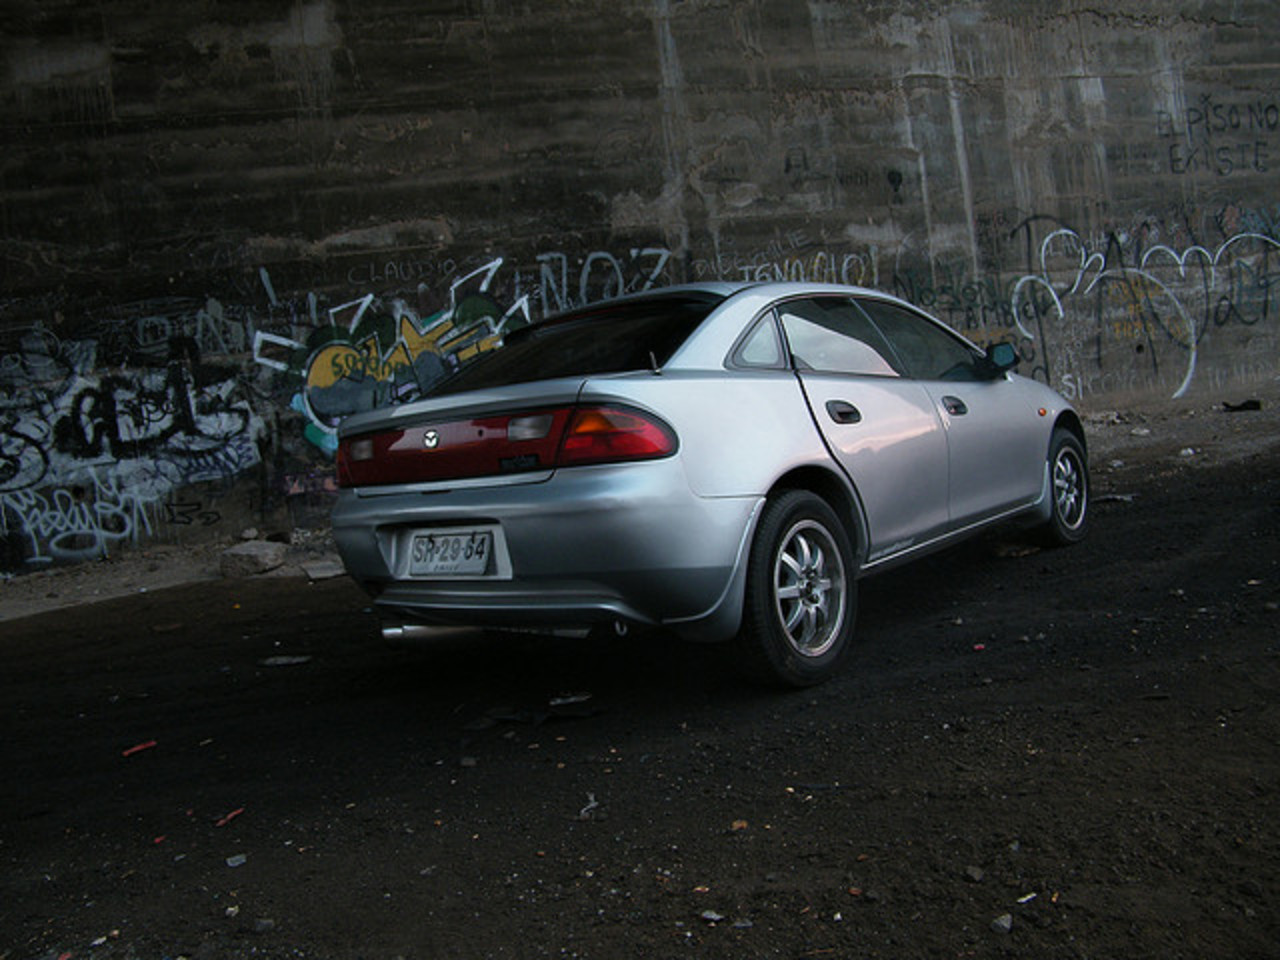 Mazda ARTIS | Flickr - Photo Sharing!